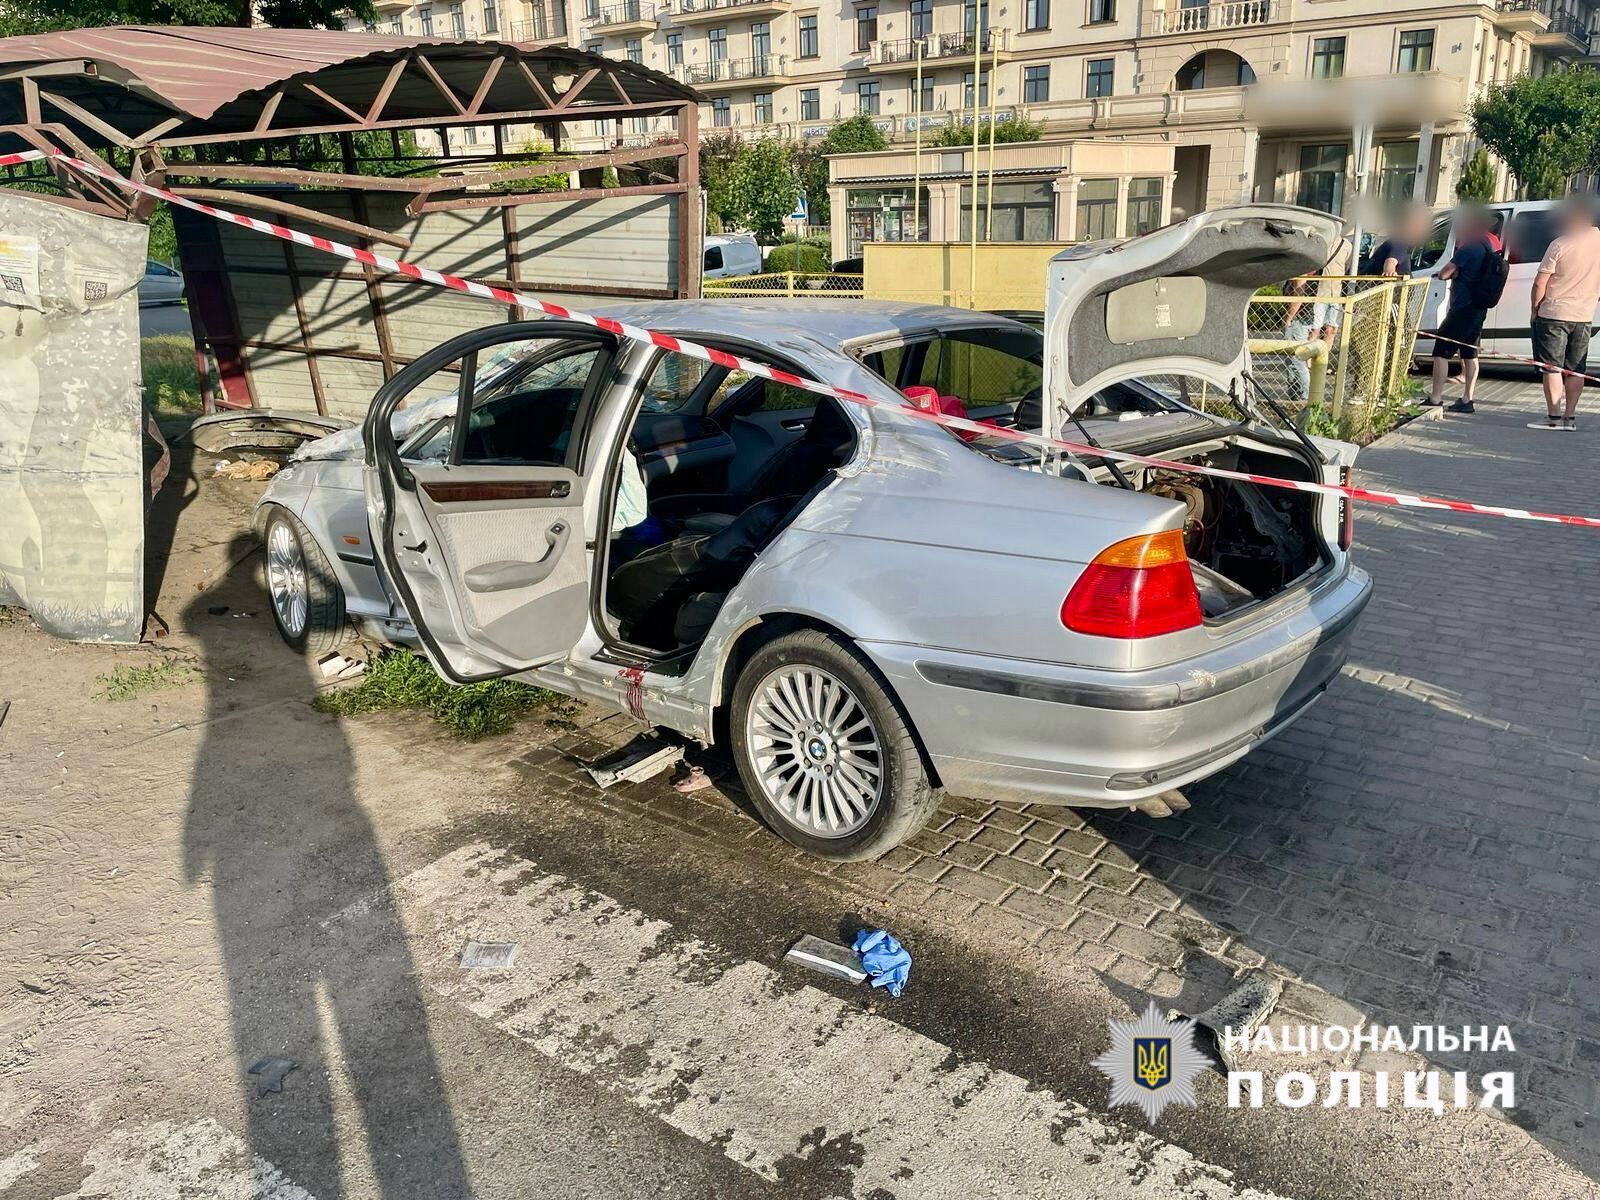 В Одесской области водитель под хмельком снес пешеходов на "зебре": много пострадавших. Видео 18+